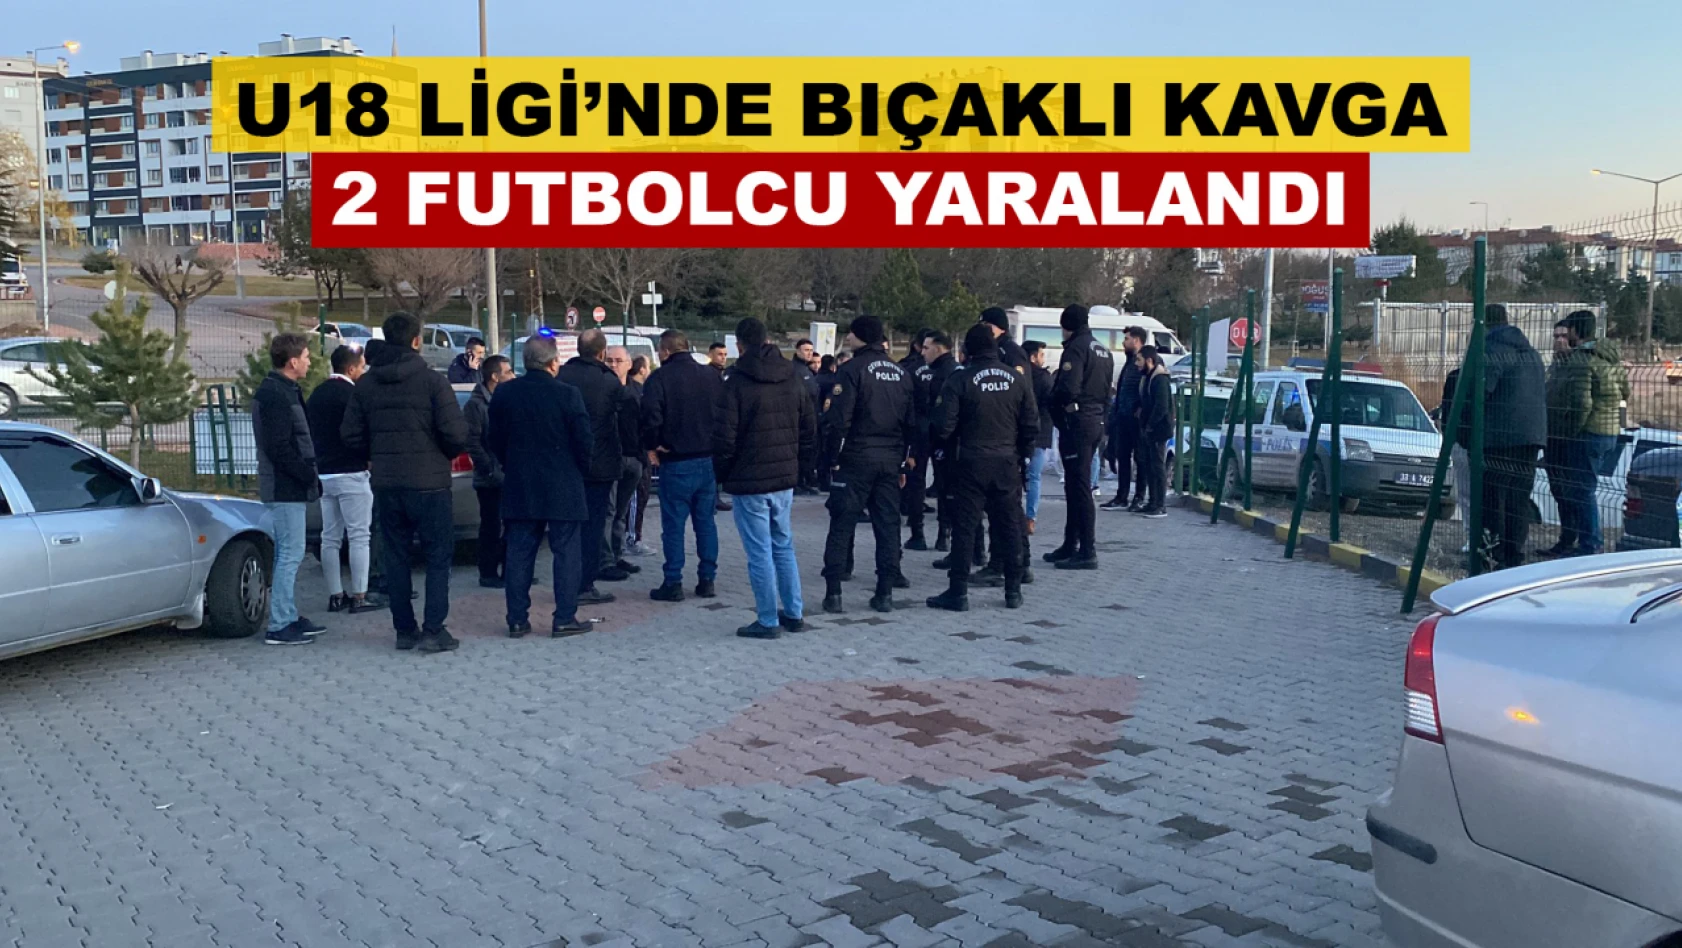 Kayseri'de Amatör Maçta Bıçaklı Kavga! (2 Yaralı) - Hem de U18 Ligi'nde...